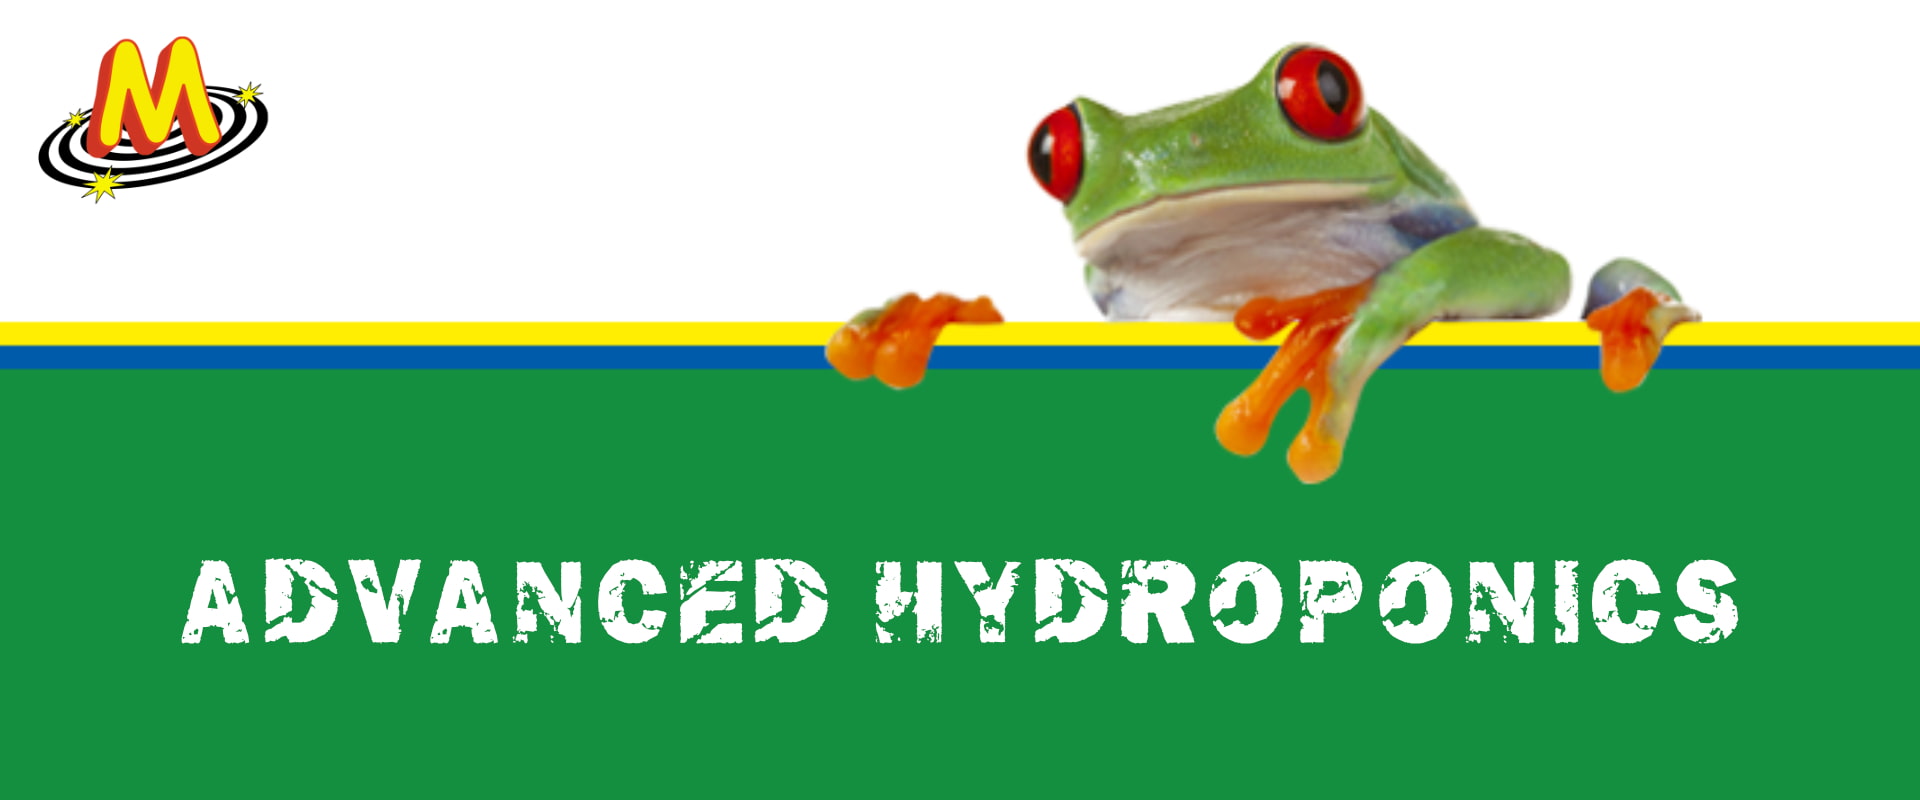 Advanced Hydroponics Banner